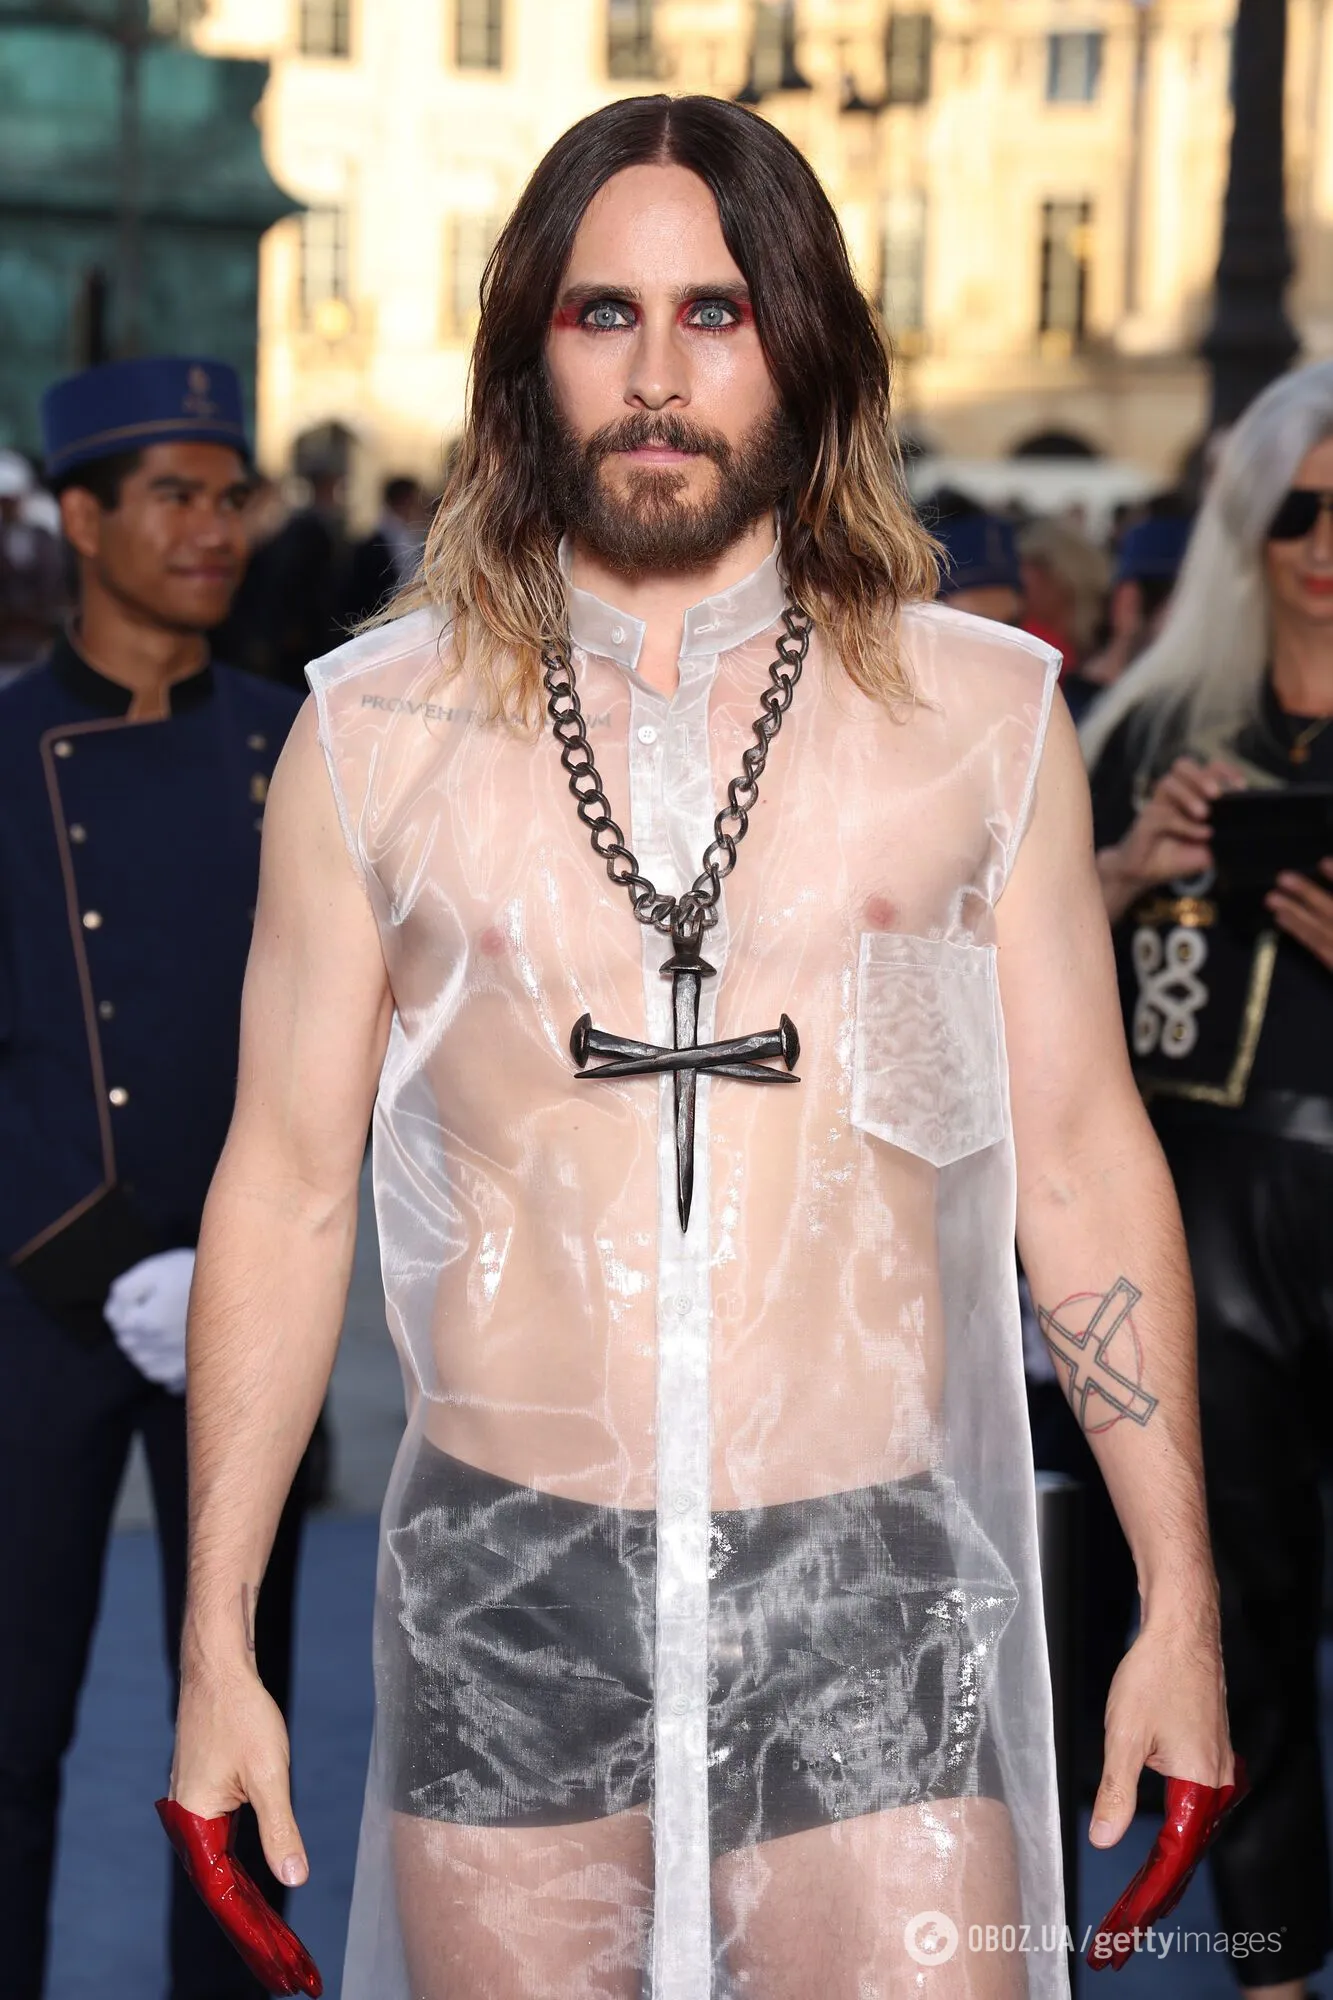 Джаред Лето вышел на публику в трусах и прозрачной рубашке с крестом: поклонники не оценили. Фото